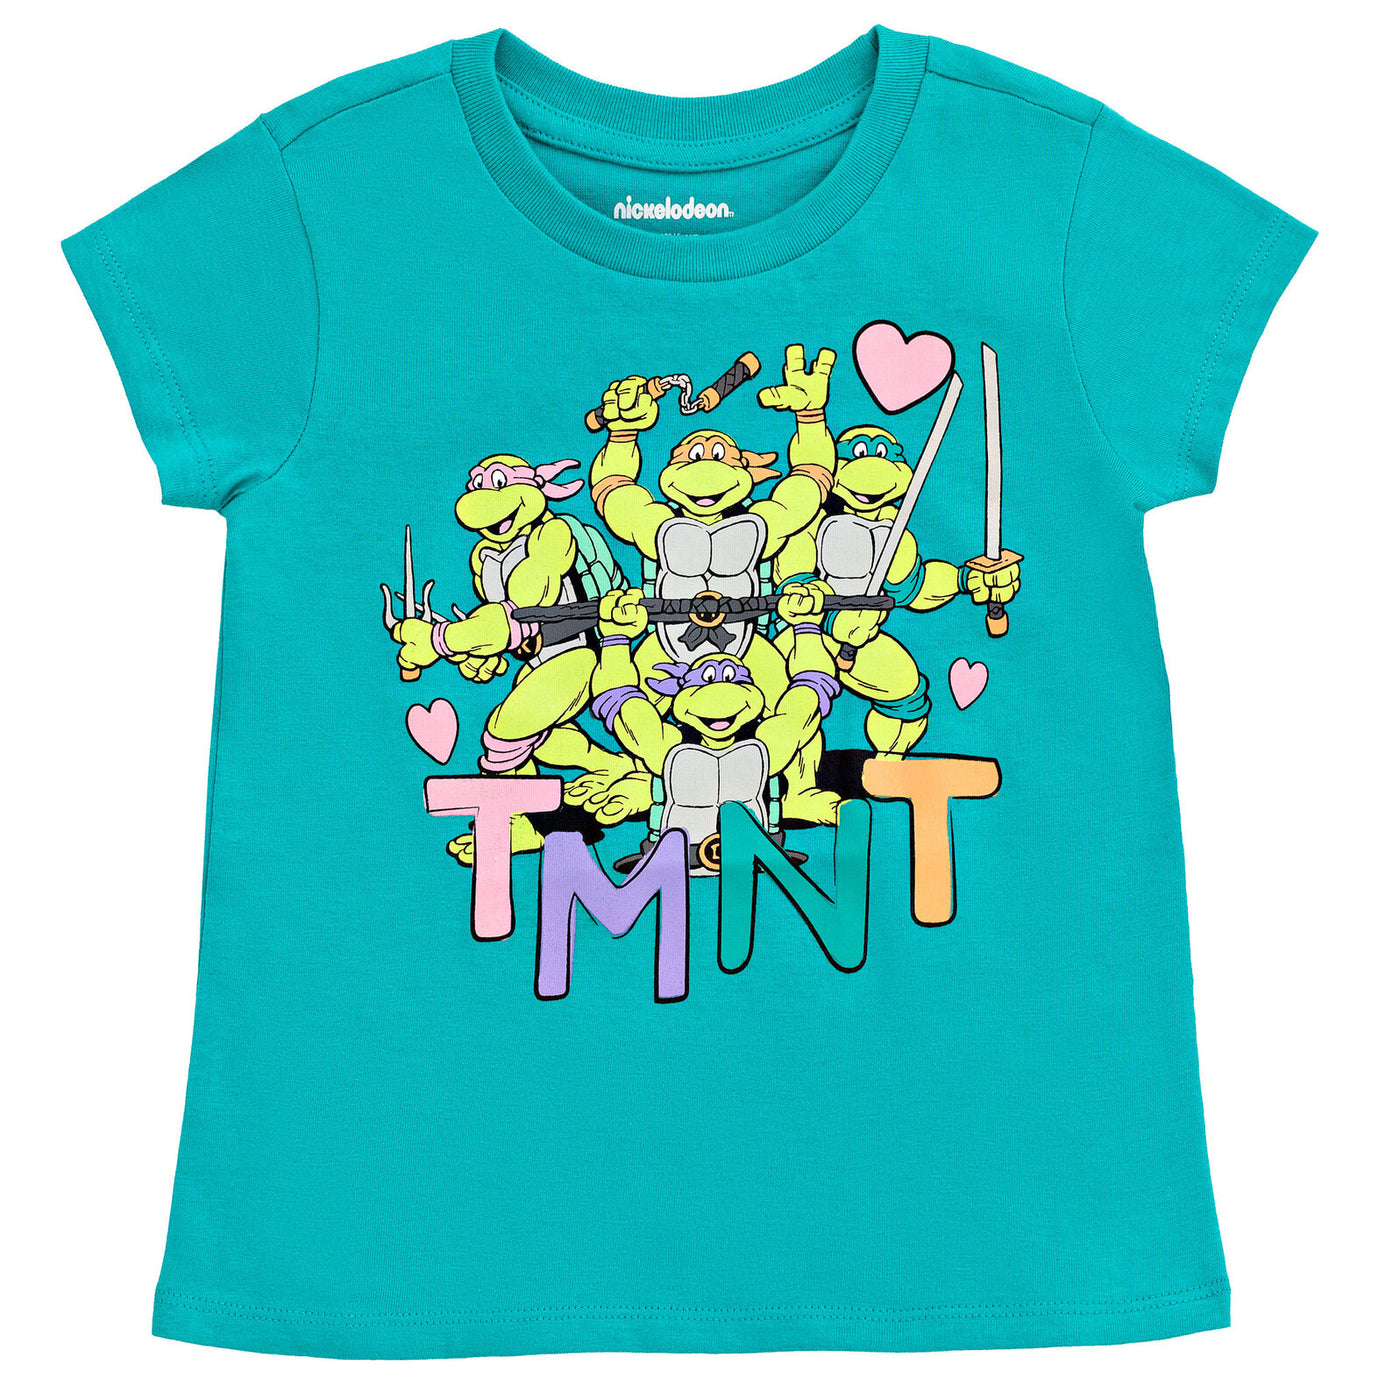 Teenage Mutant Ninja Turtles 2 Pack T-Shirts